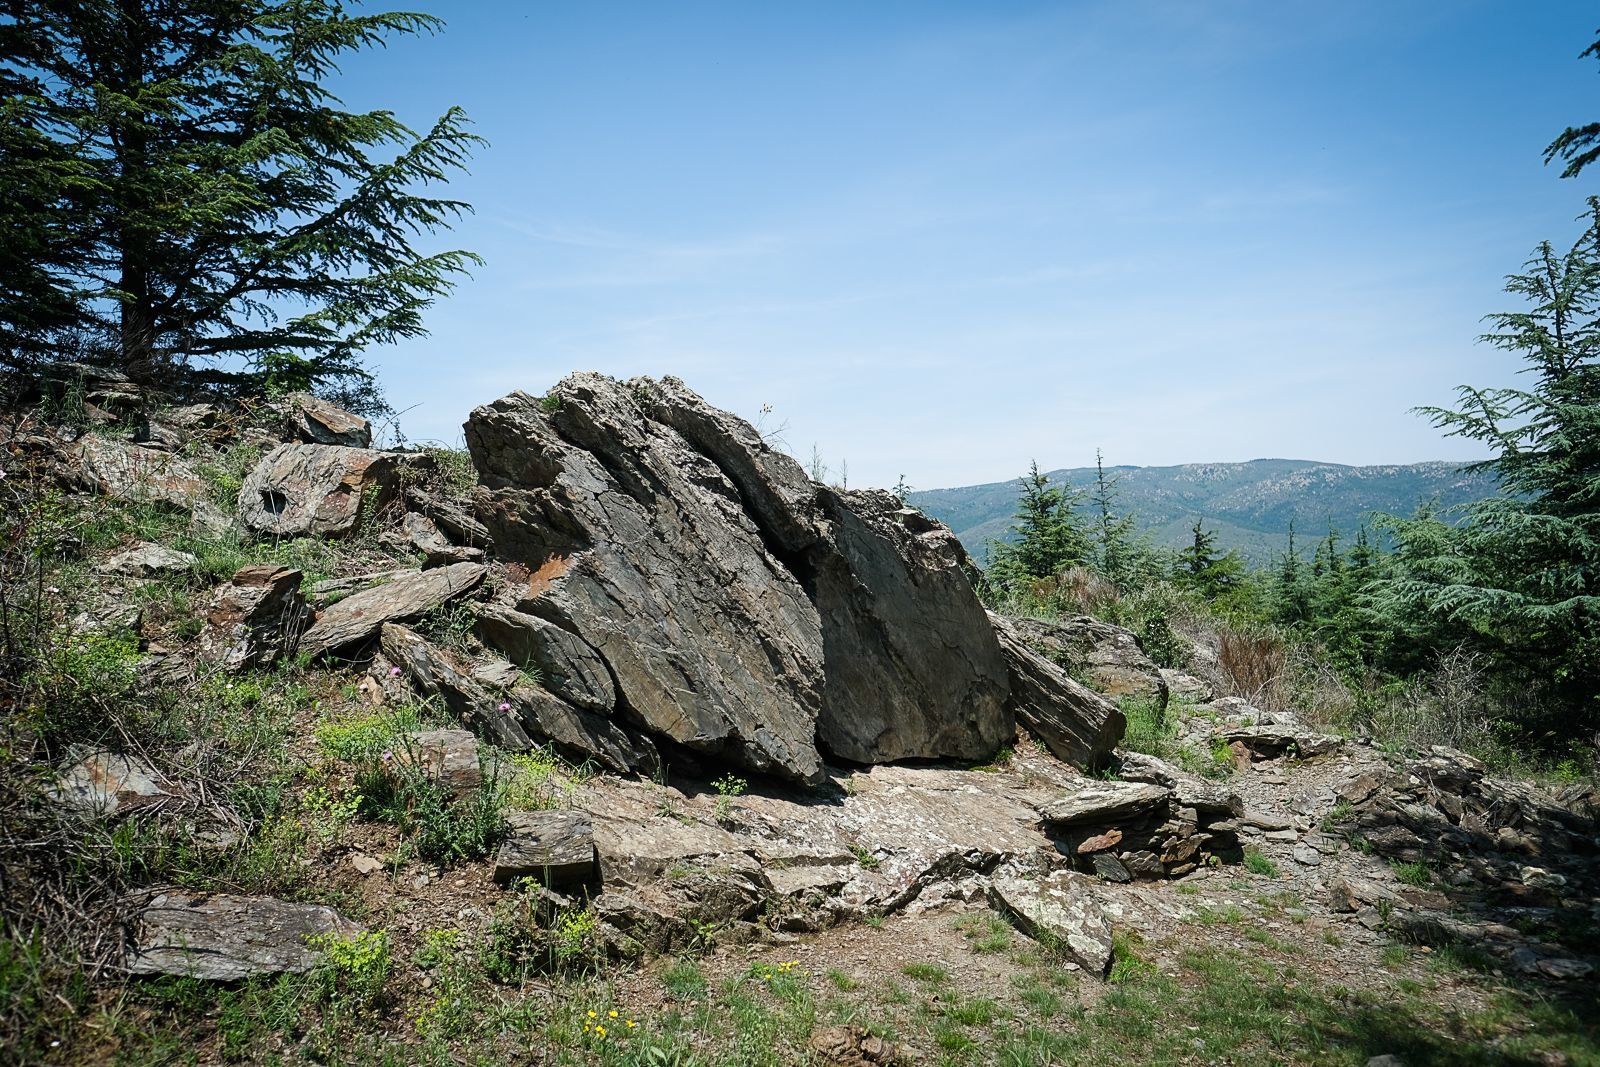 Protégée par une forêt, la roche n'est pas facile à trouver ! LP/Yann Kerveno